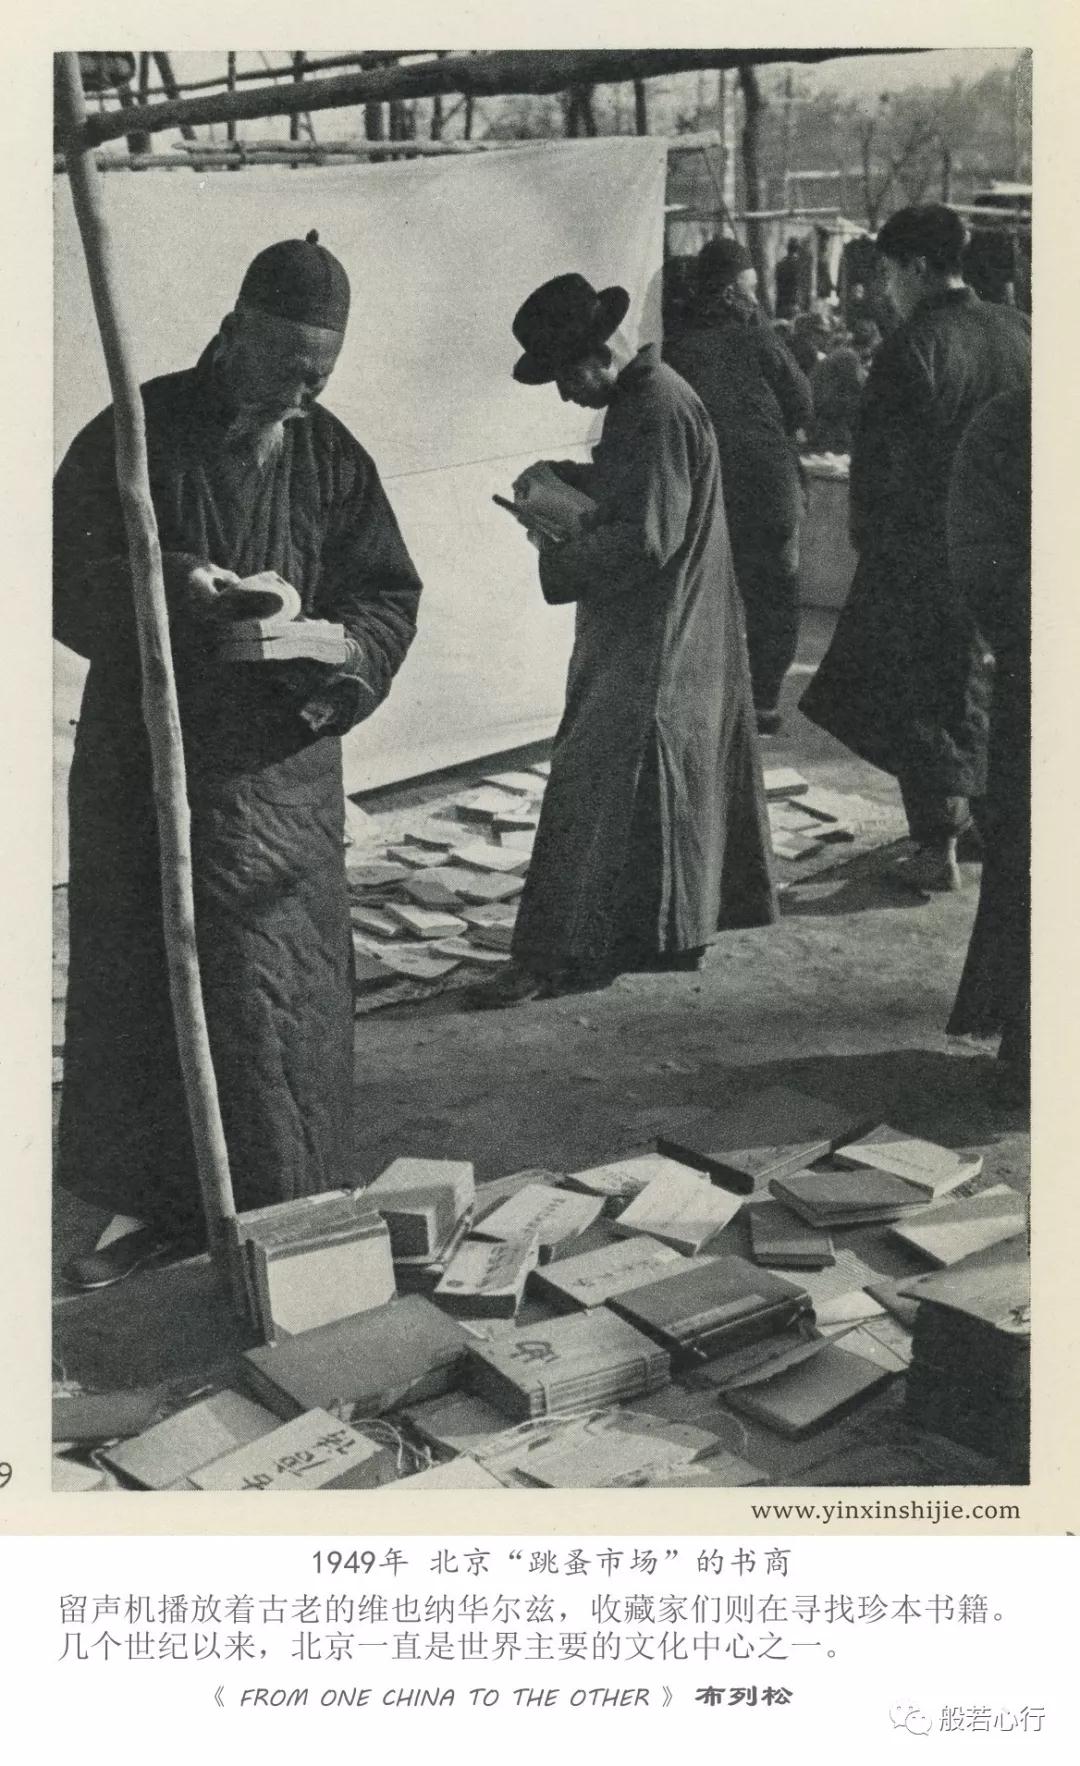 1949年北京“跳蚤市场”的书商-布列松